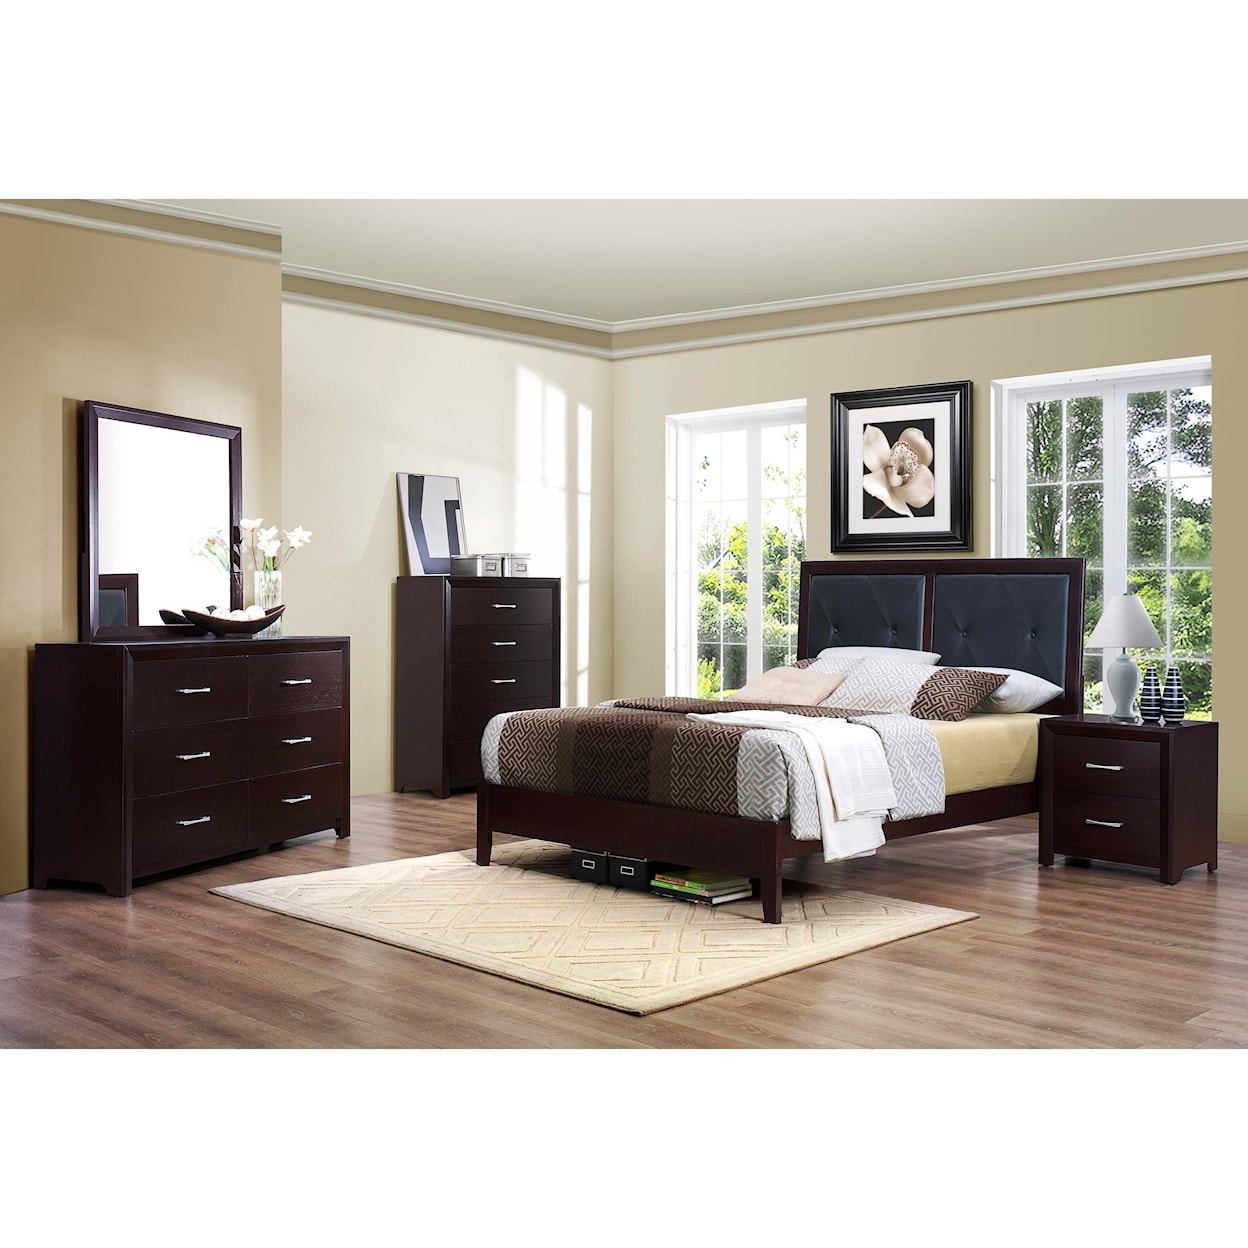 Homelegance Furniture Edina Queen Bedroom Group